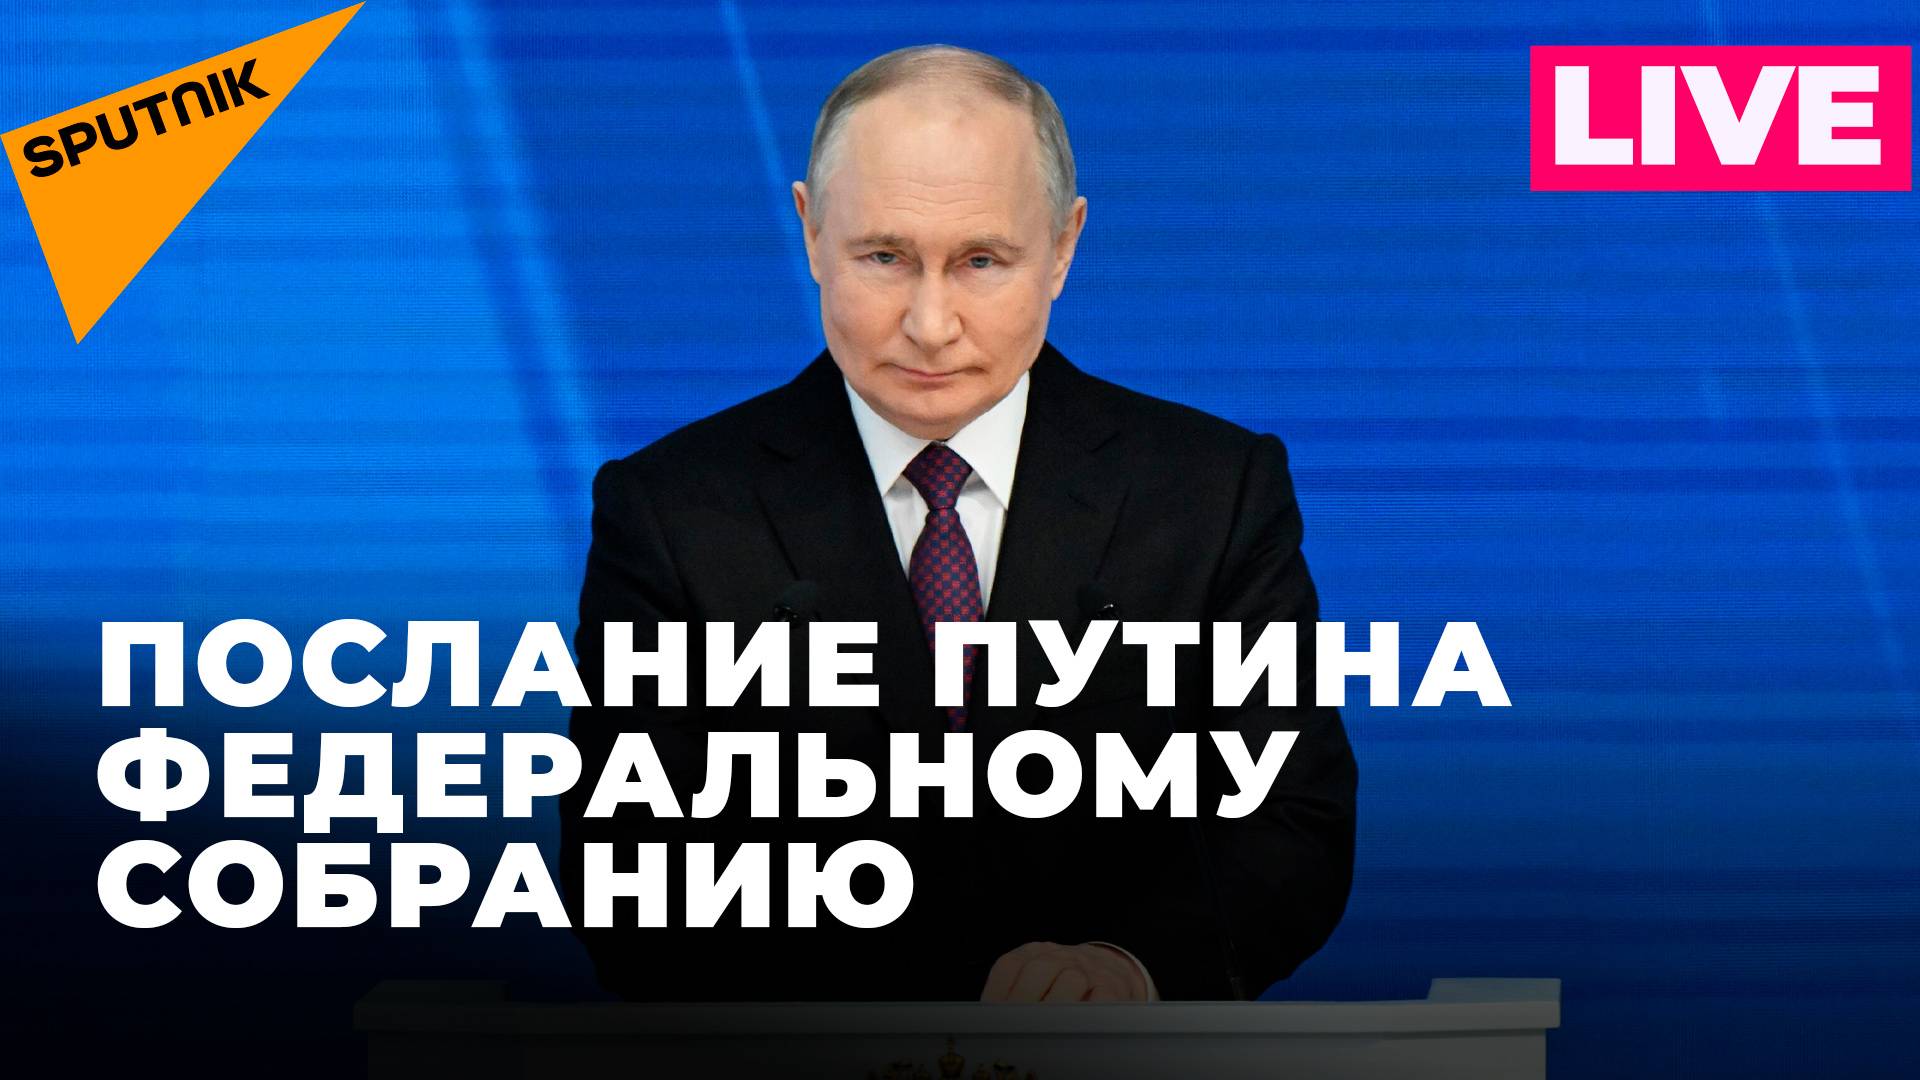 Владимир Путин обращается к депутатам Федерального собрания с ежегодным посланием. Прямая трансляция